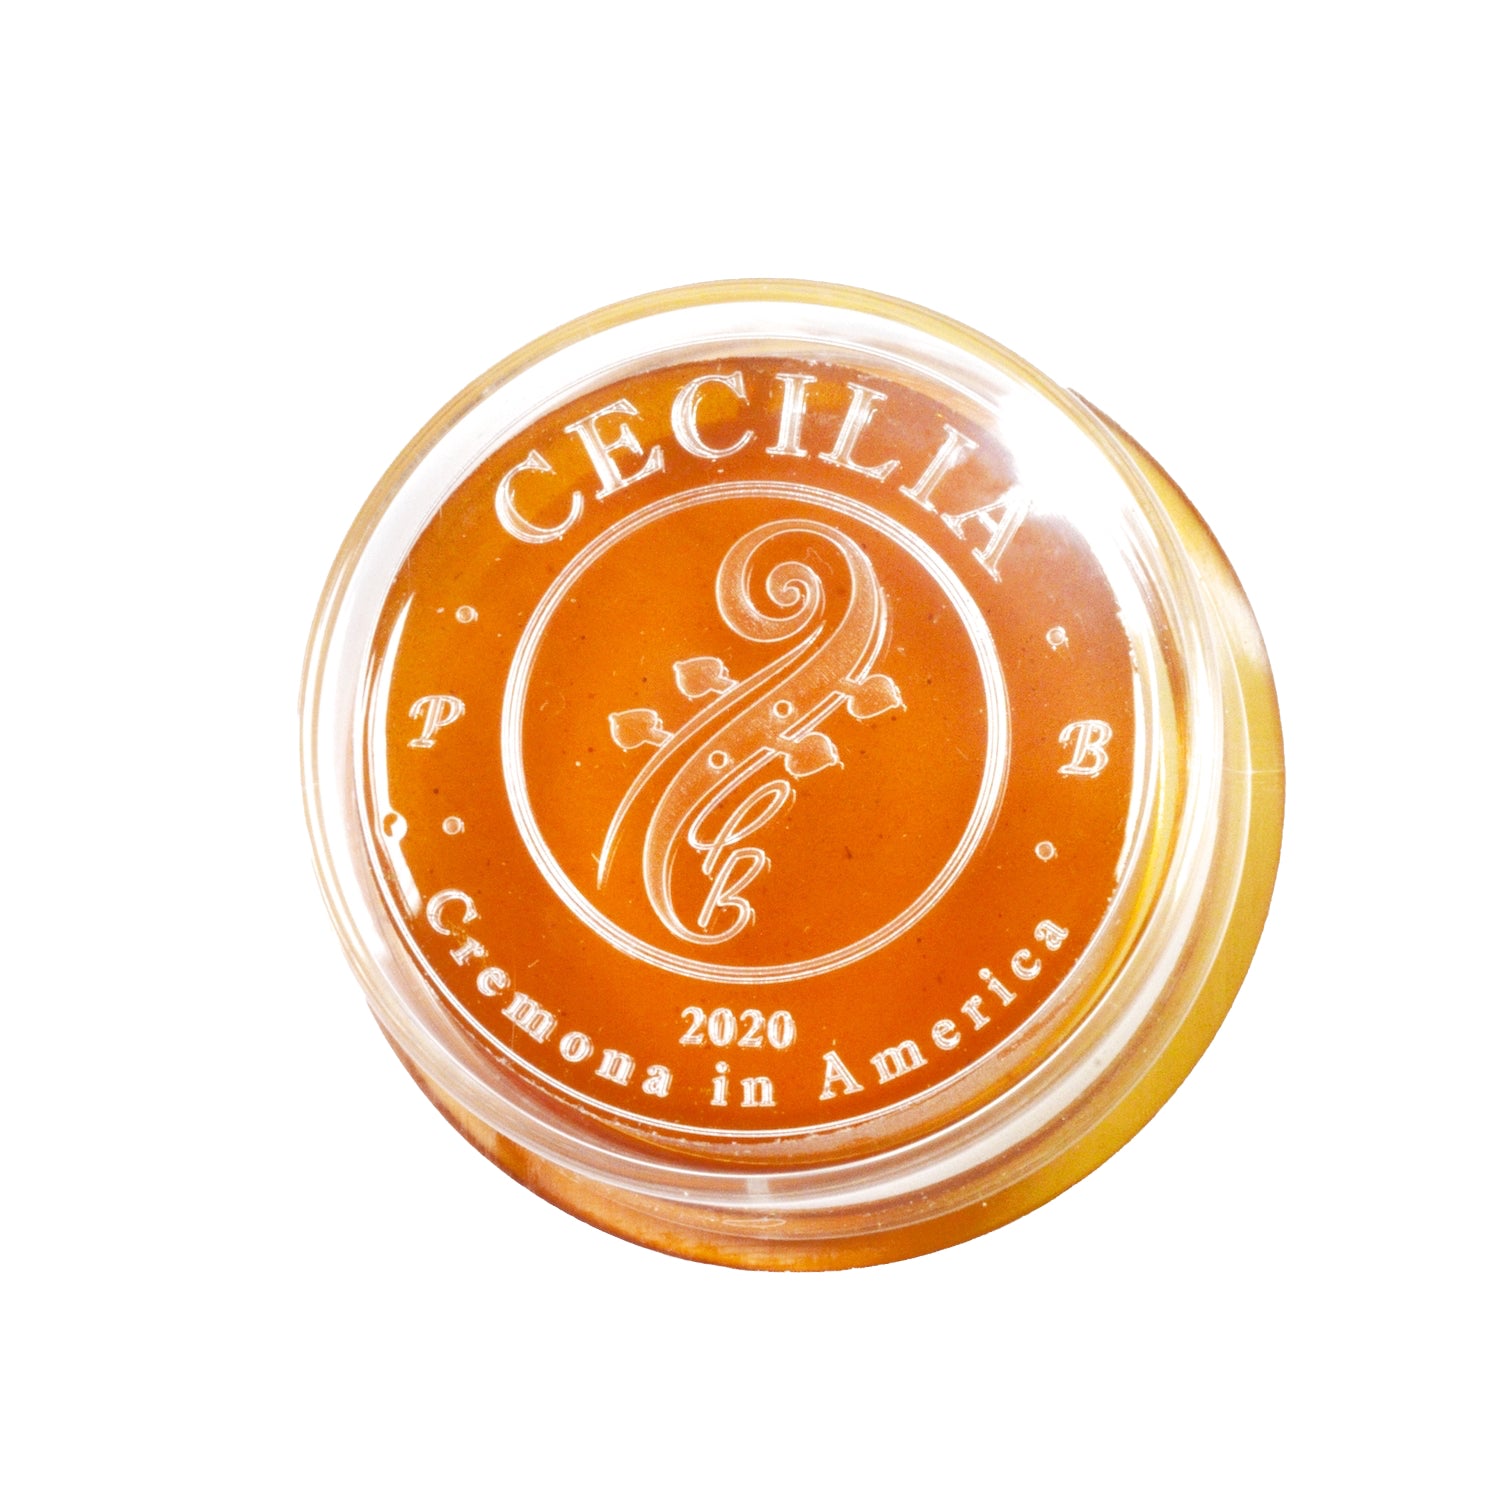 CECILIA Signature Formula Viola MINI with Spreader